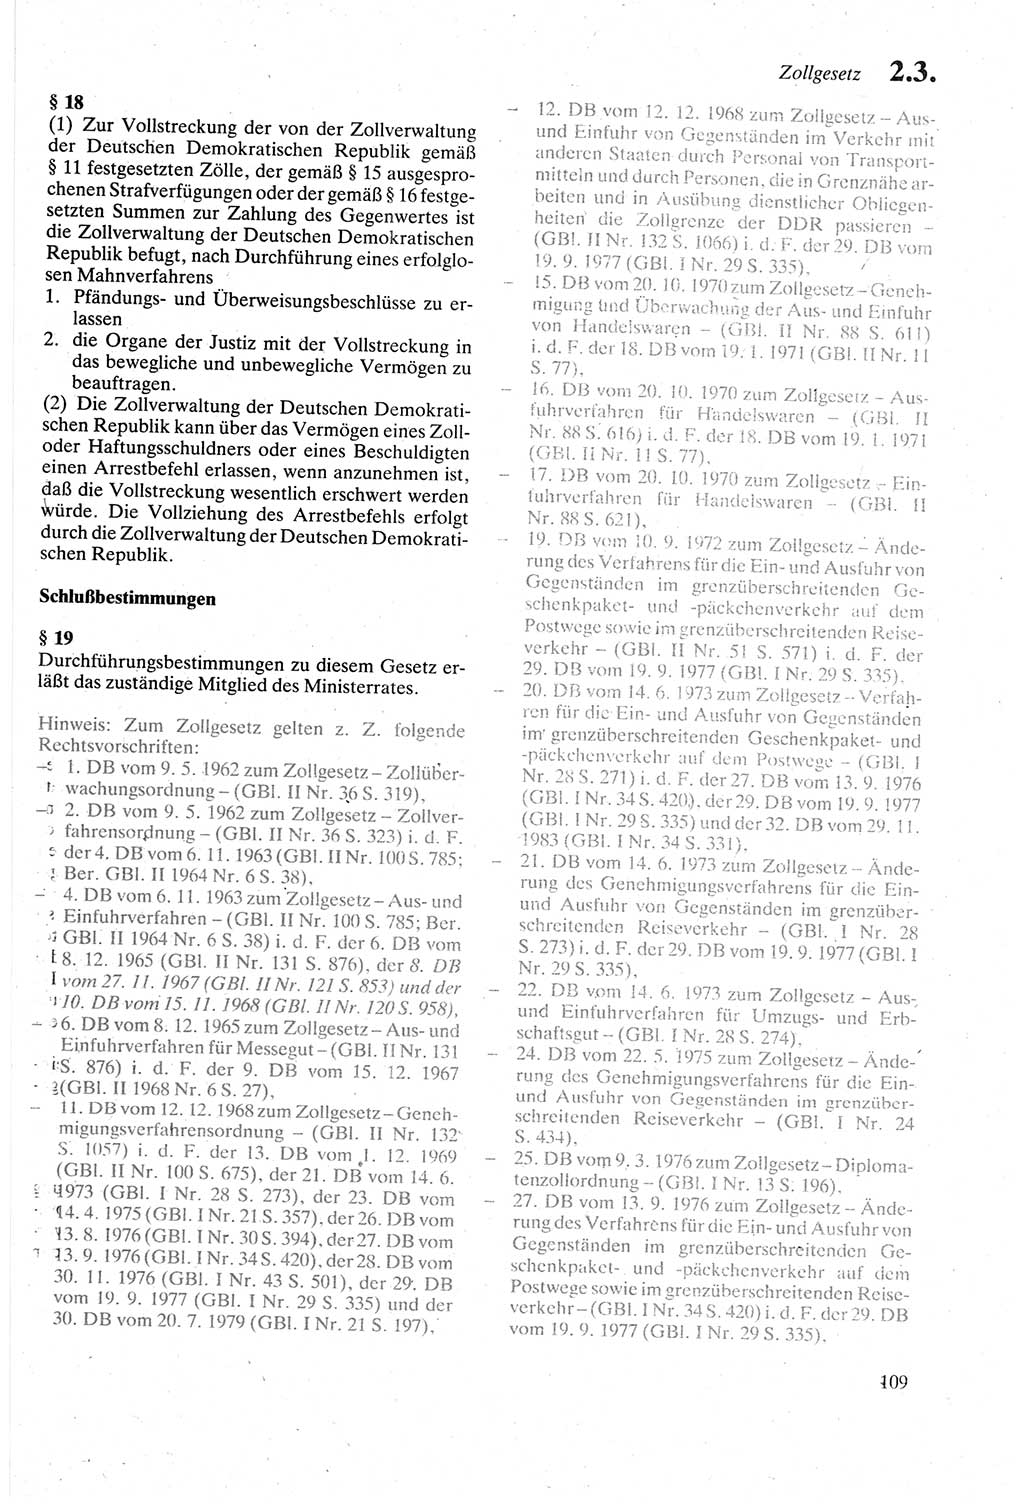 Strafgesetzbuch (StGB) der Deutschen Demokratischen Republik (DDR) sowie angrenzende Gesetze und Bestimmungen 1979, Seite 109 (StGB DDR Ges. Best. 1979, S. 109)